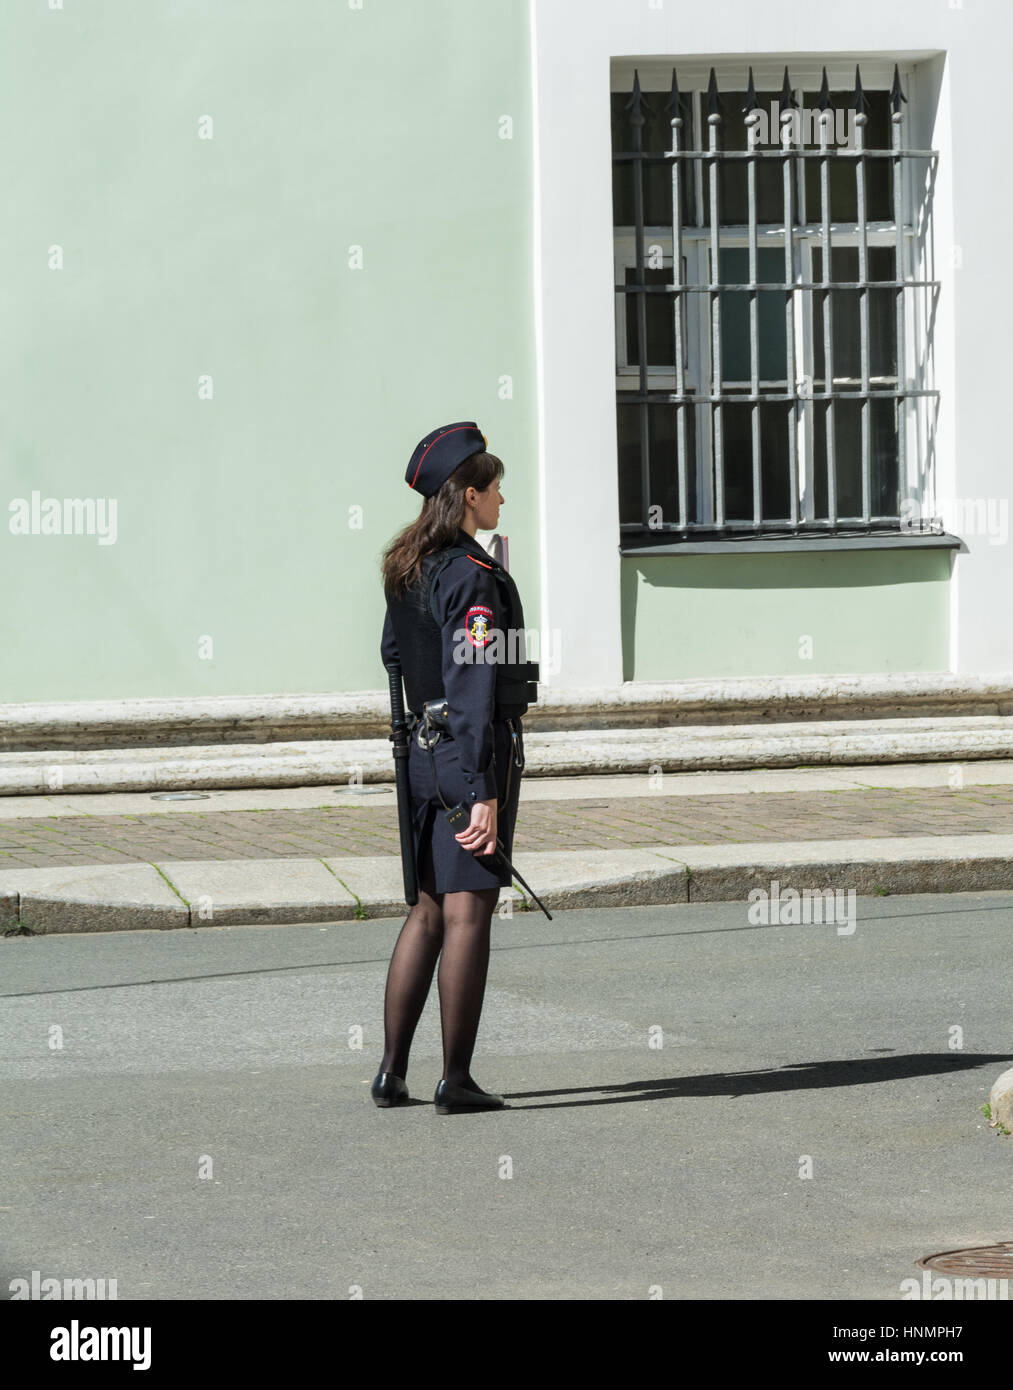 ST. Petersburgo, Rusia - Julio 10, 2016: Chica en uniformes de la policía rusa contra la pared del Hermitage, en San Petersburgo, Rusia Foto de stock